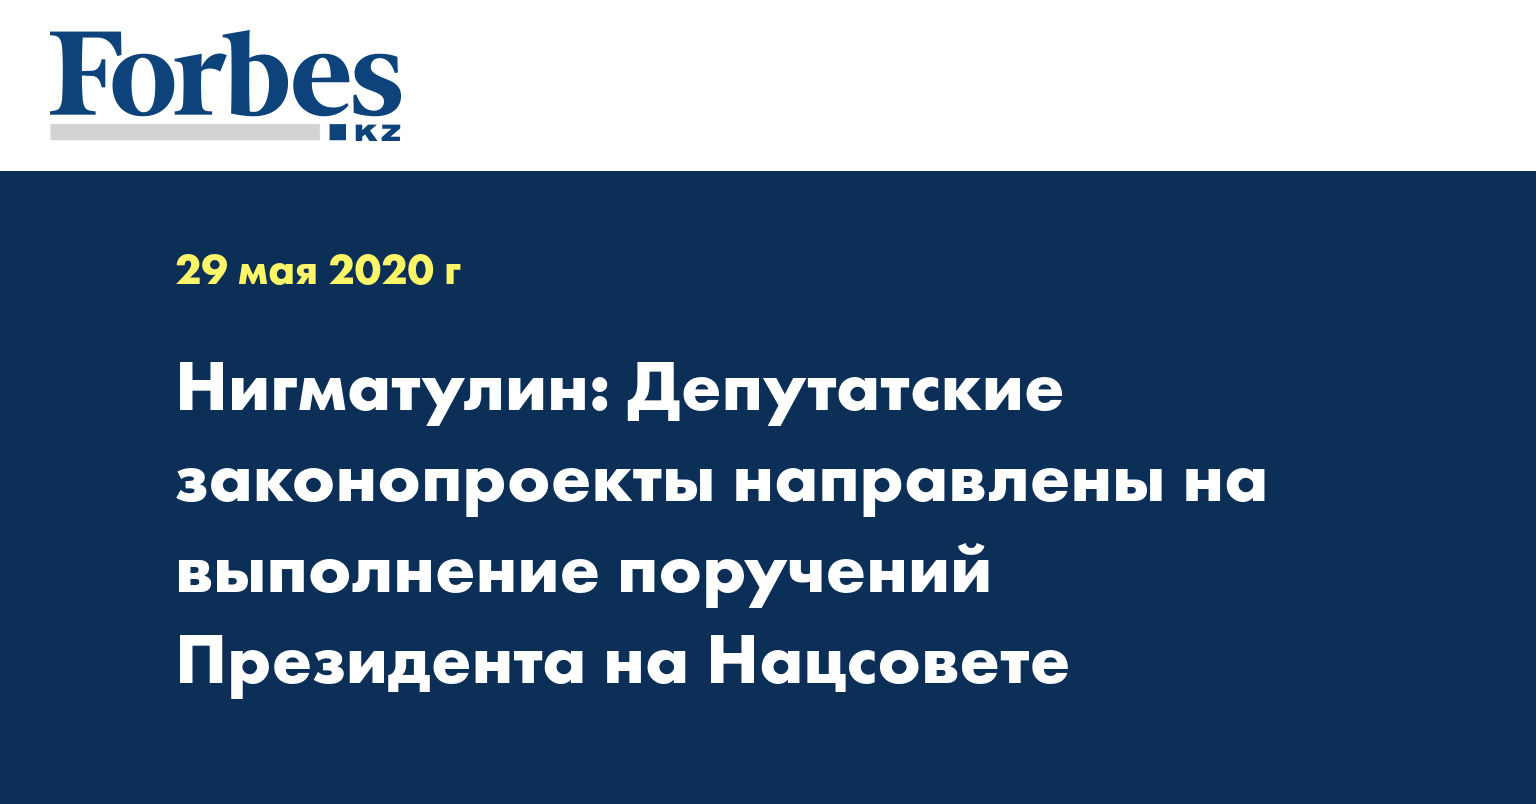 Нигматулин: Депутатские законопроекты направлены на выполнение поручений Президента на Нацсовете